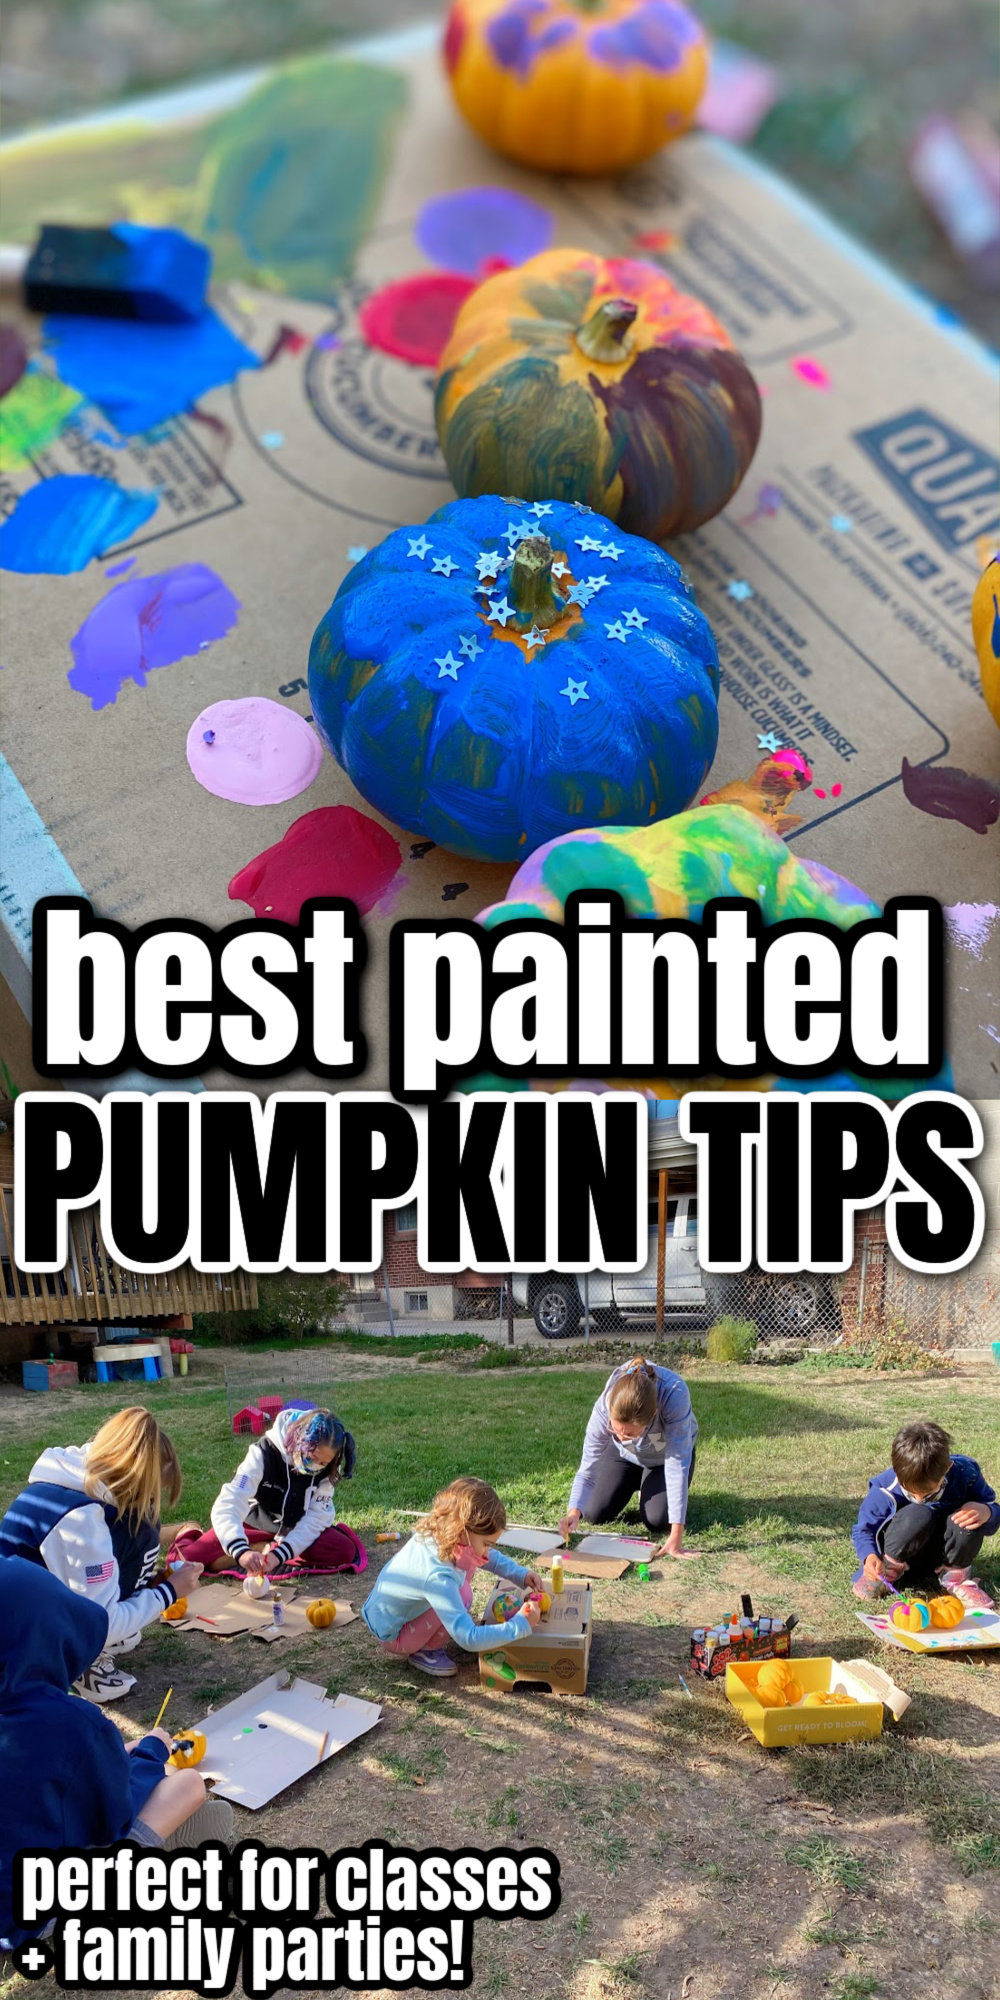 painted pumpkin ideas pumpkin contest